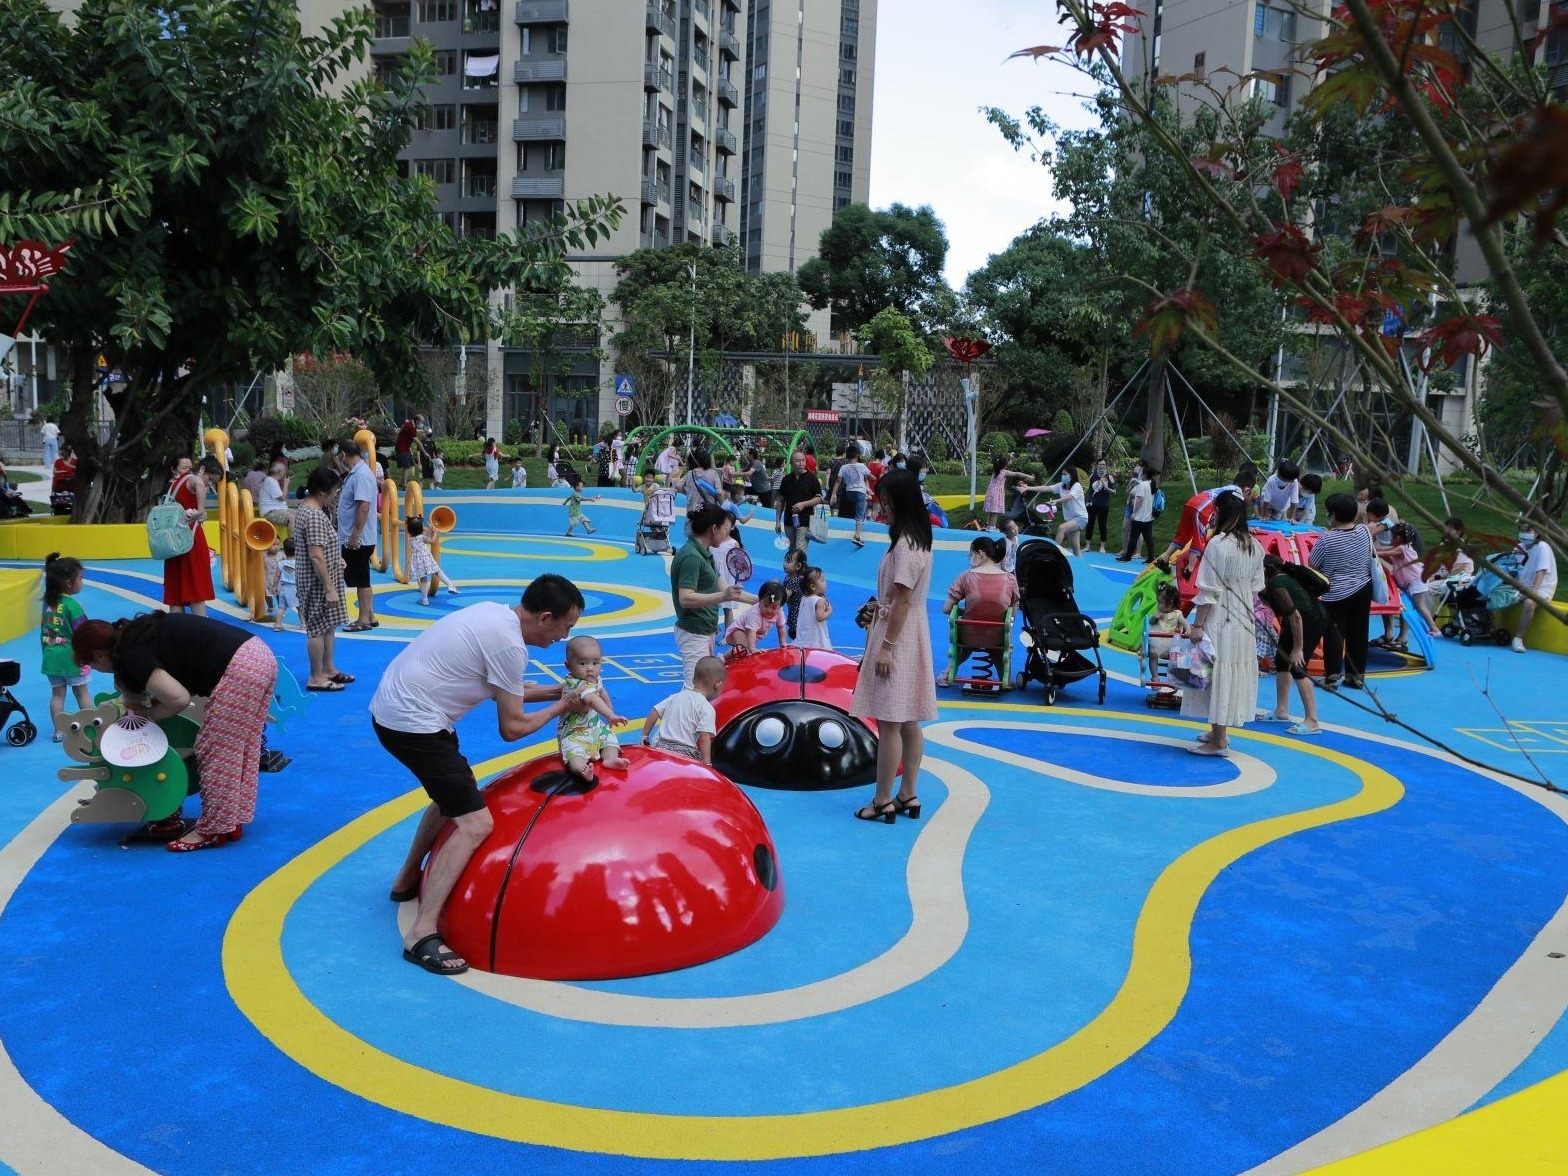 大浪街道白玉街花漾街区建成开放 新增各种游乐设施成儿童乐园